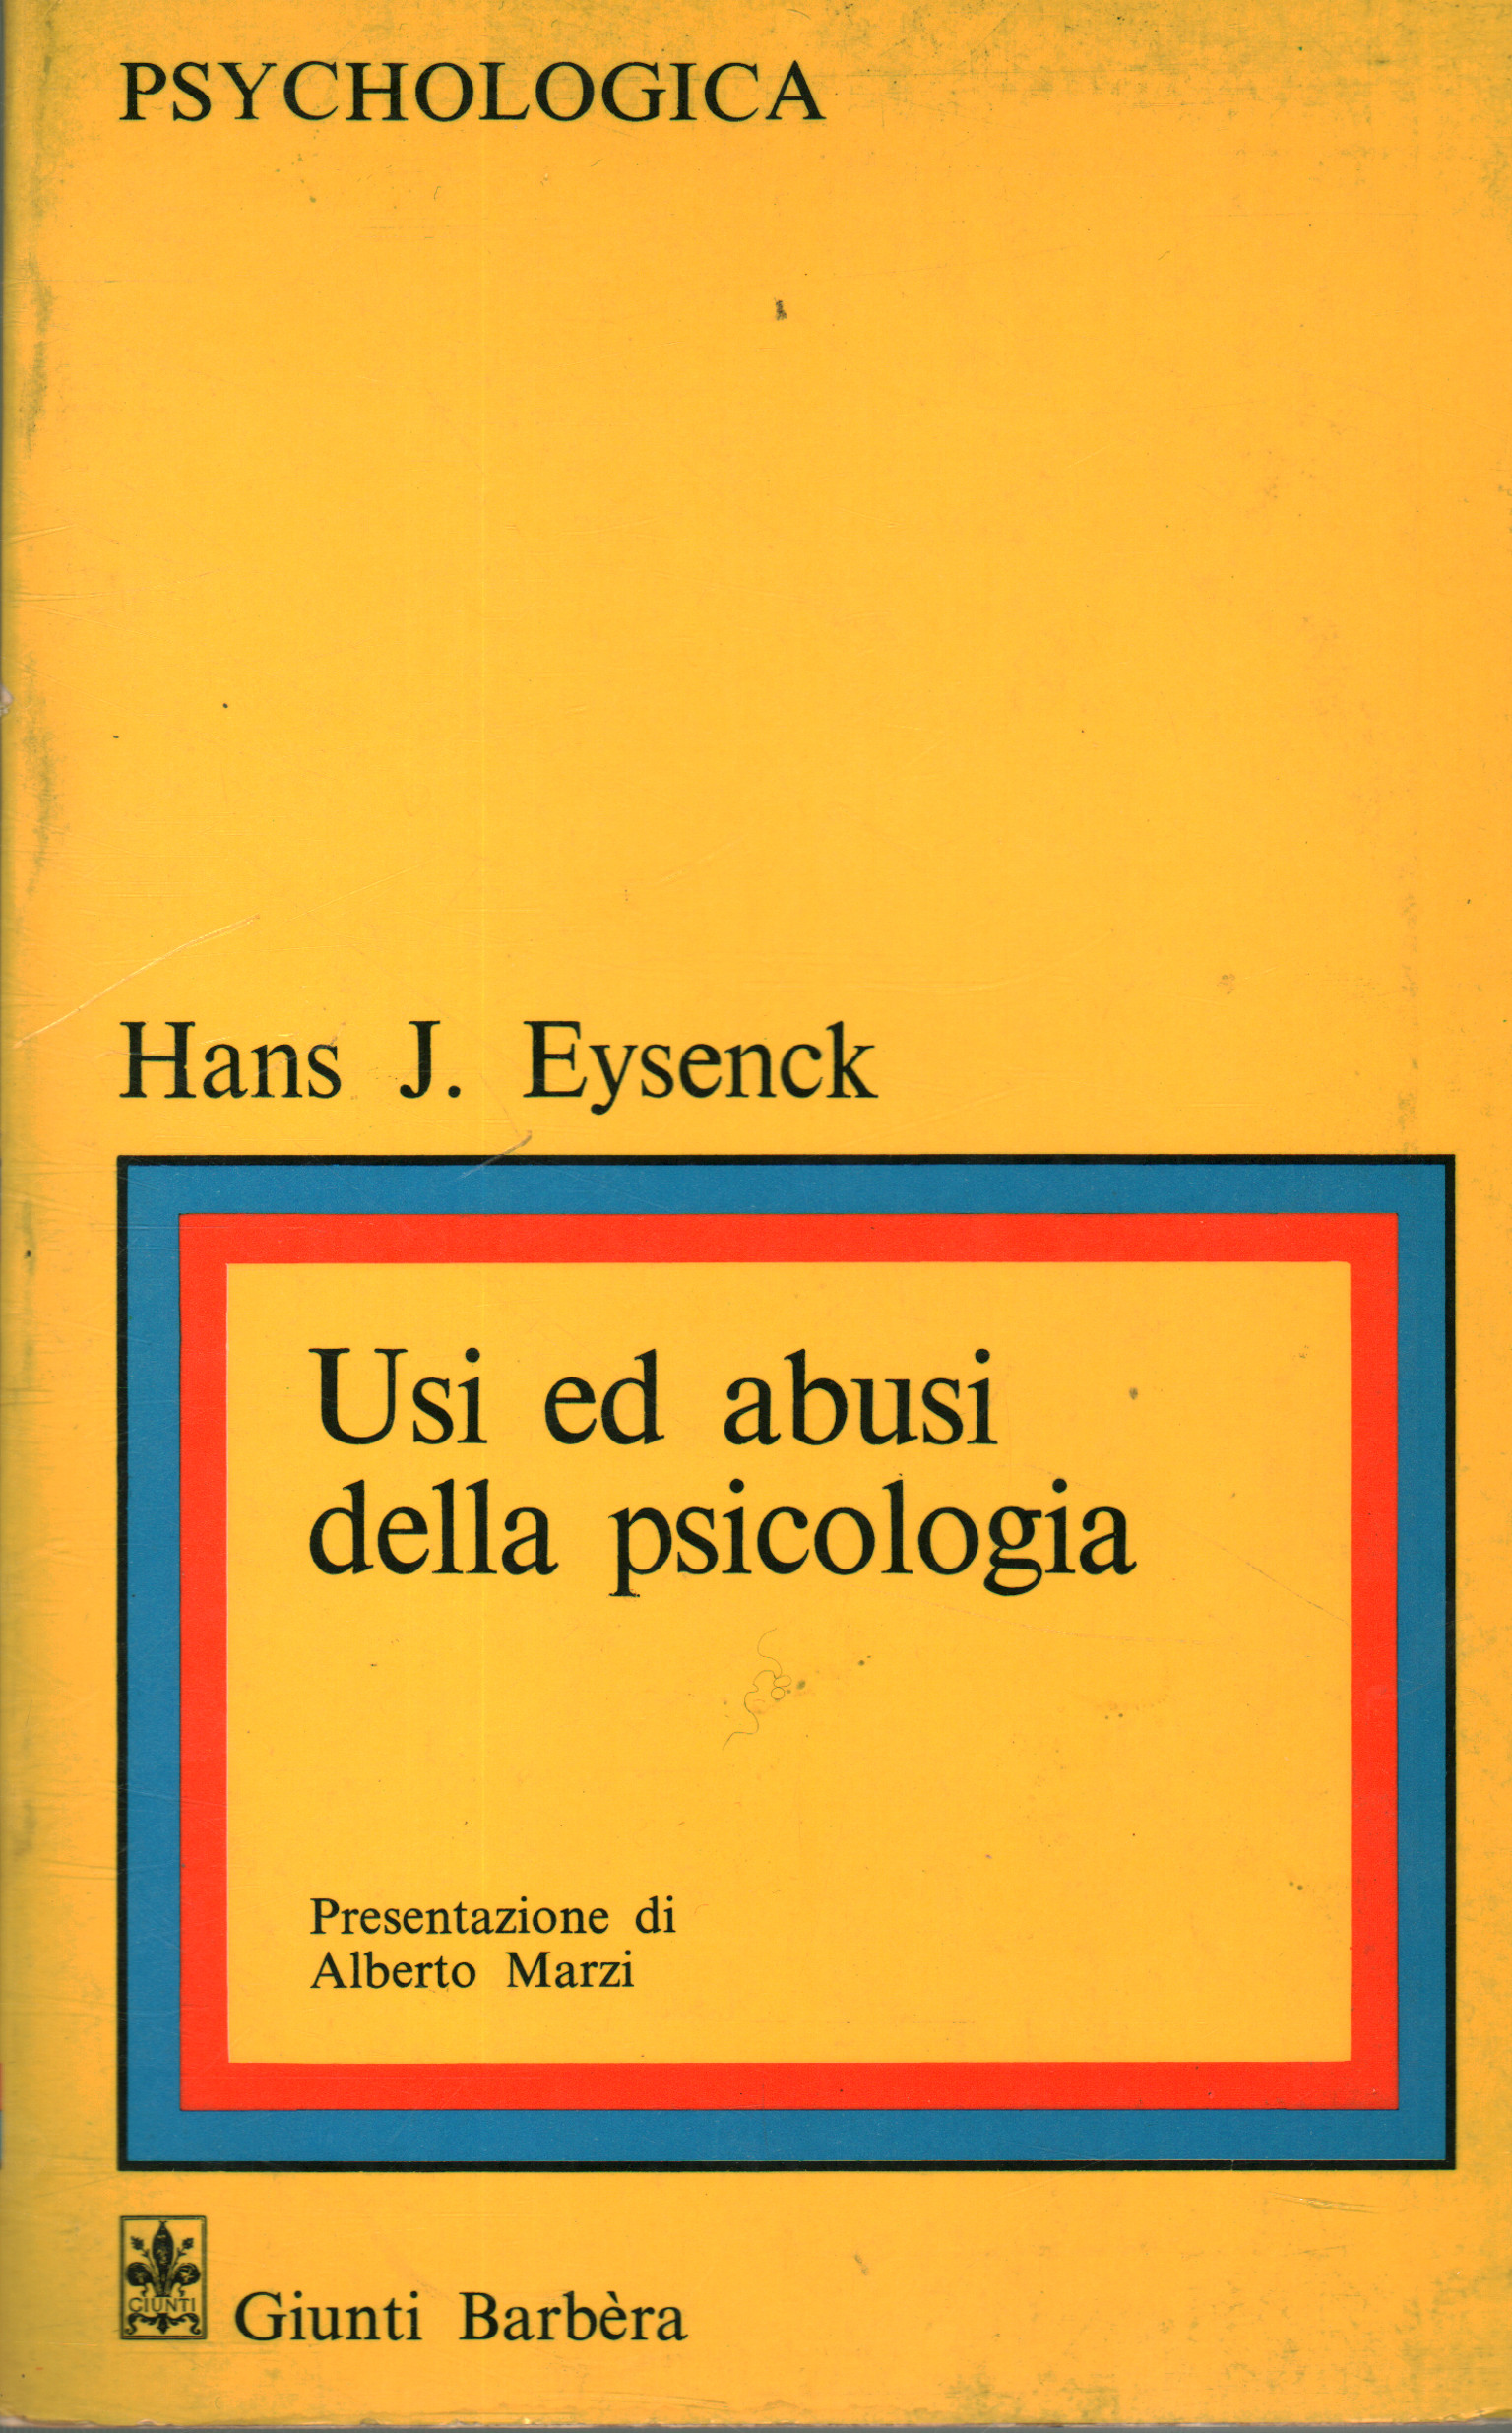 Usi ed abusi della psicologia, Hans J. Eysenck